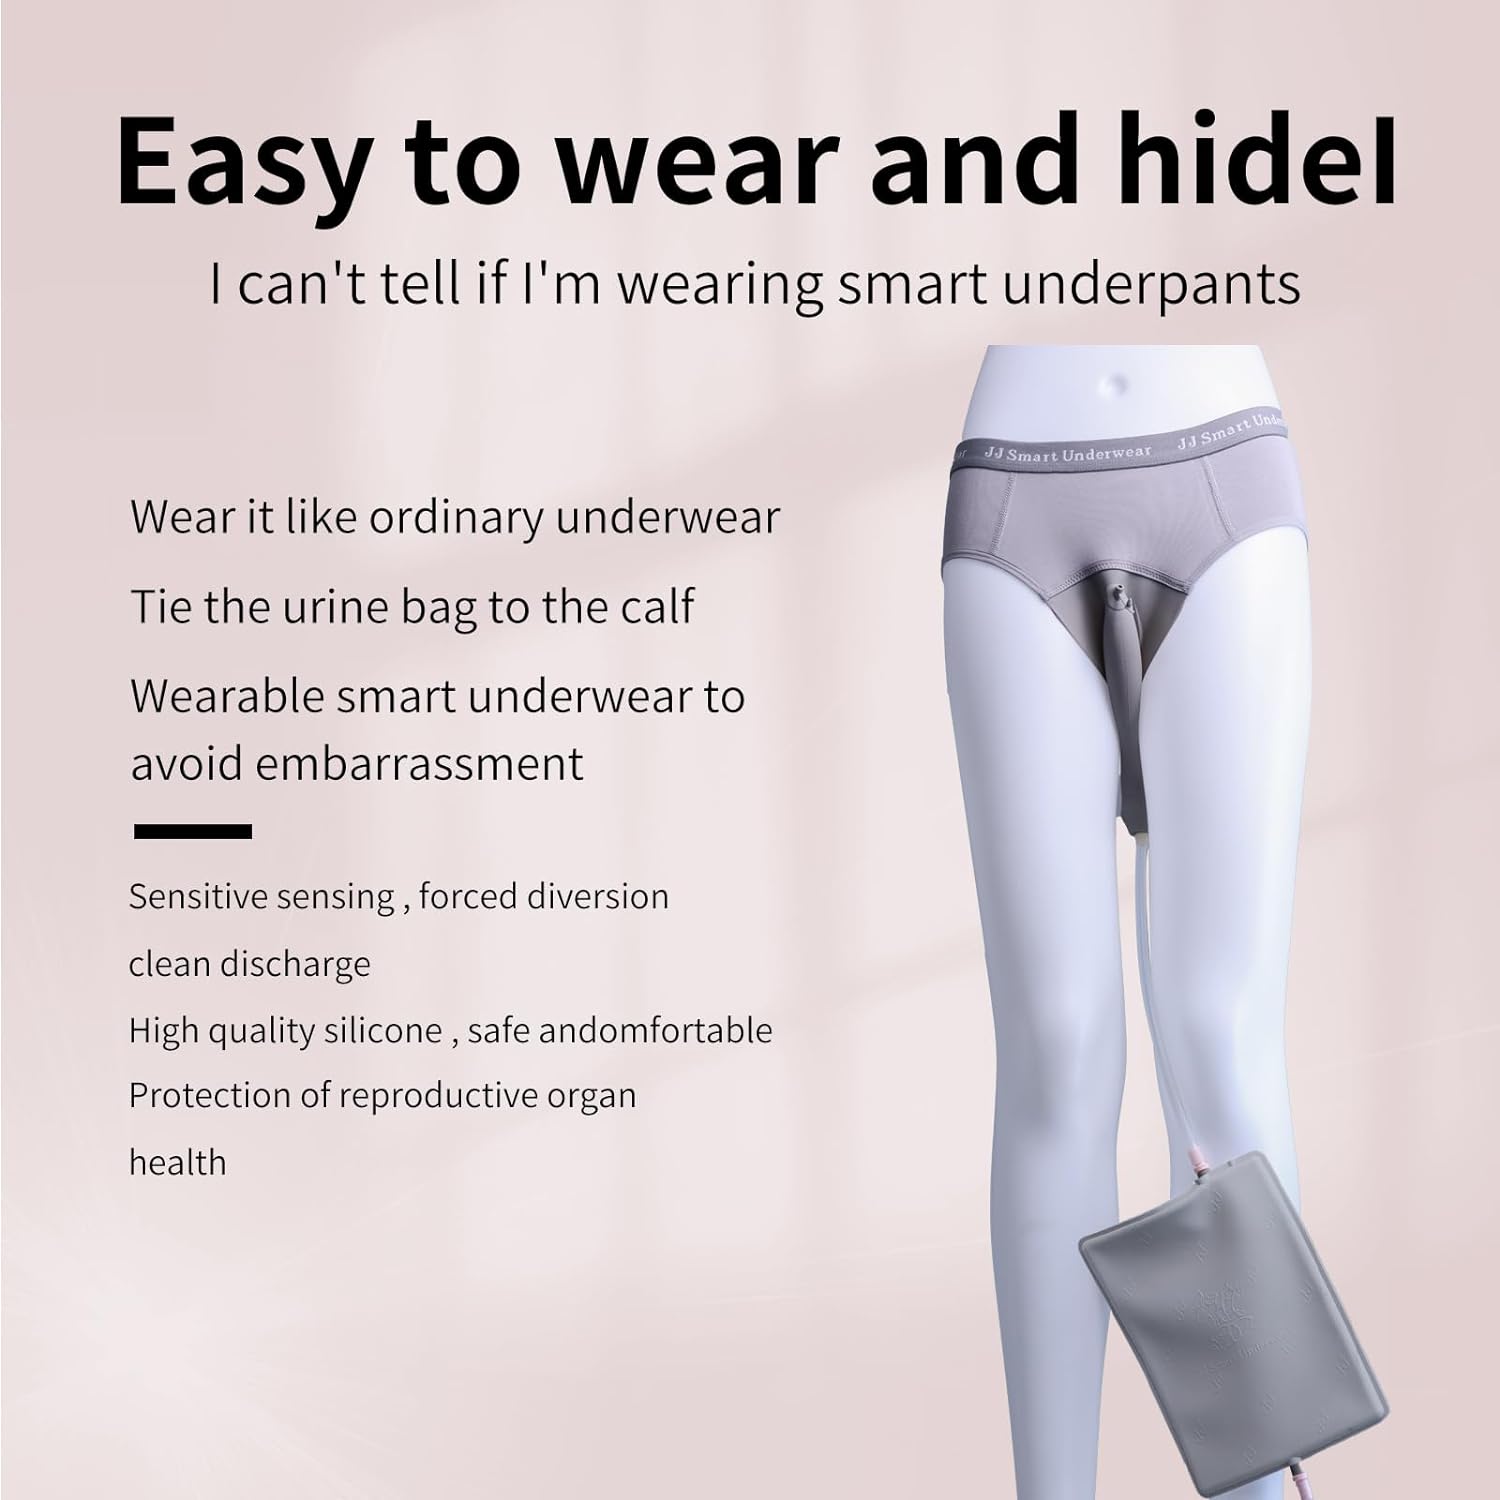 JJ SMATR]🔥NEW🔥Women's smart underwear, 1000ml urine bag